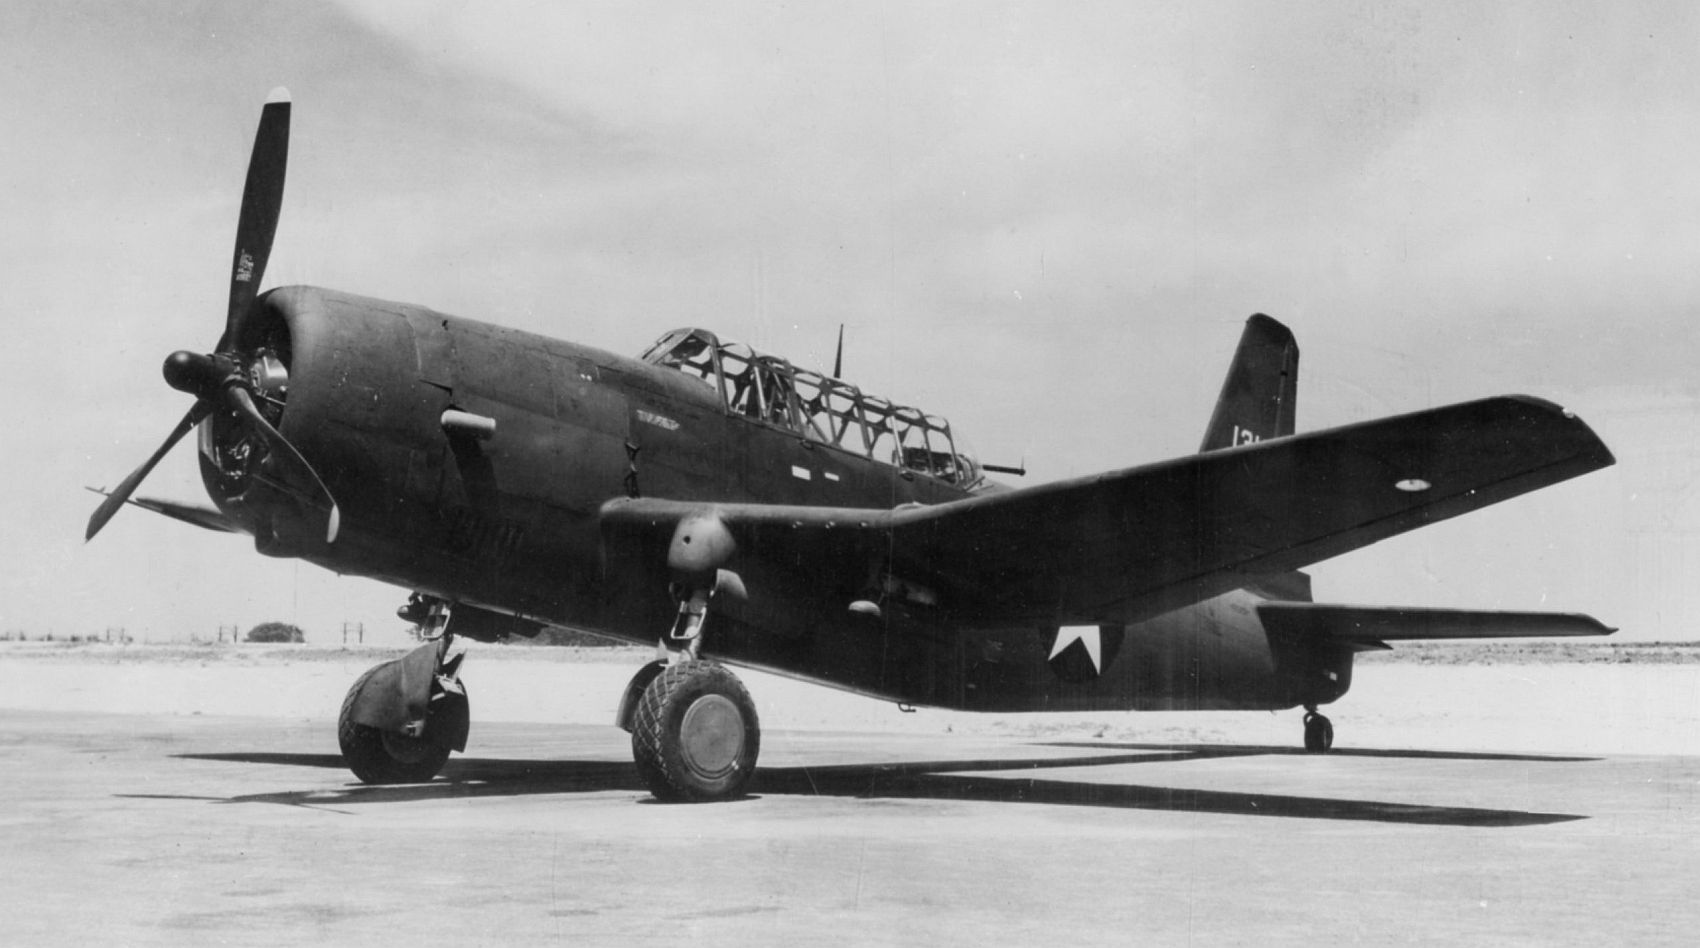 Vultee A-35B Vengeance, 1945